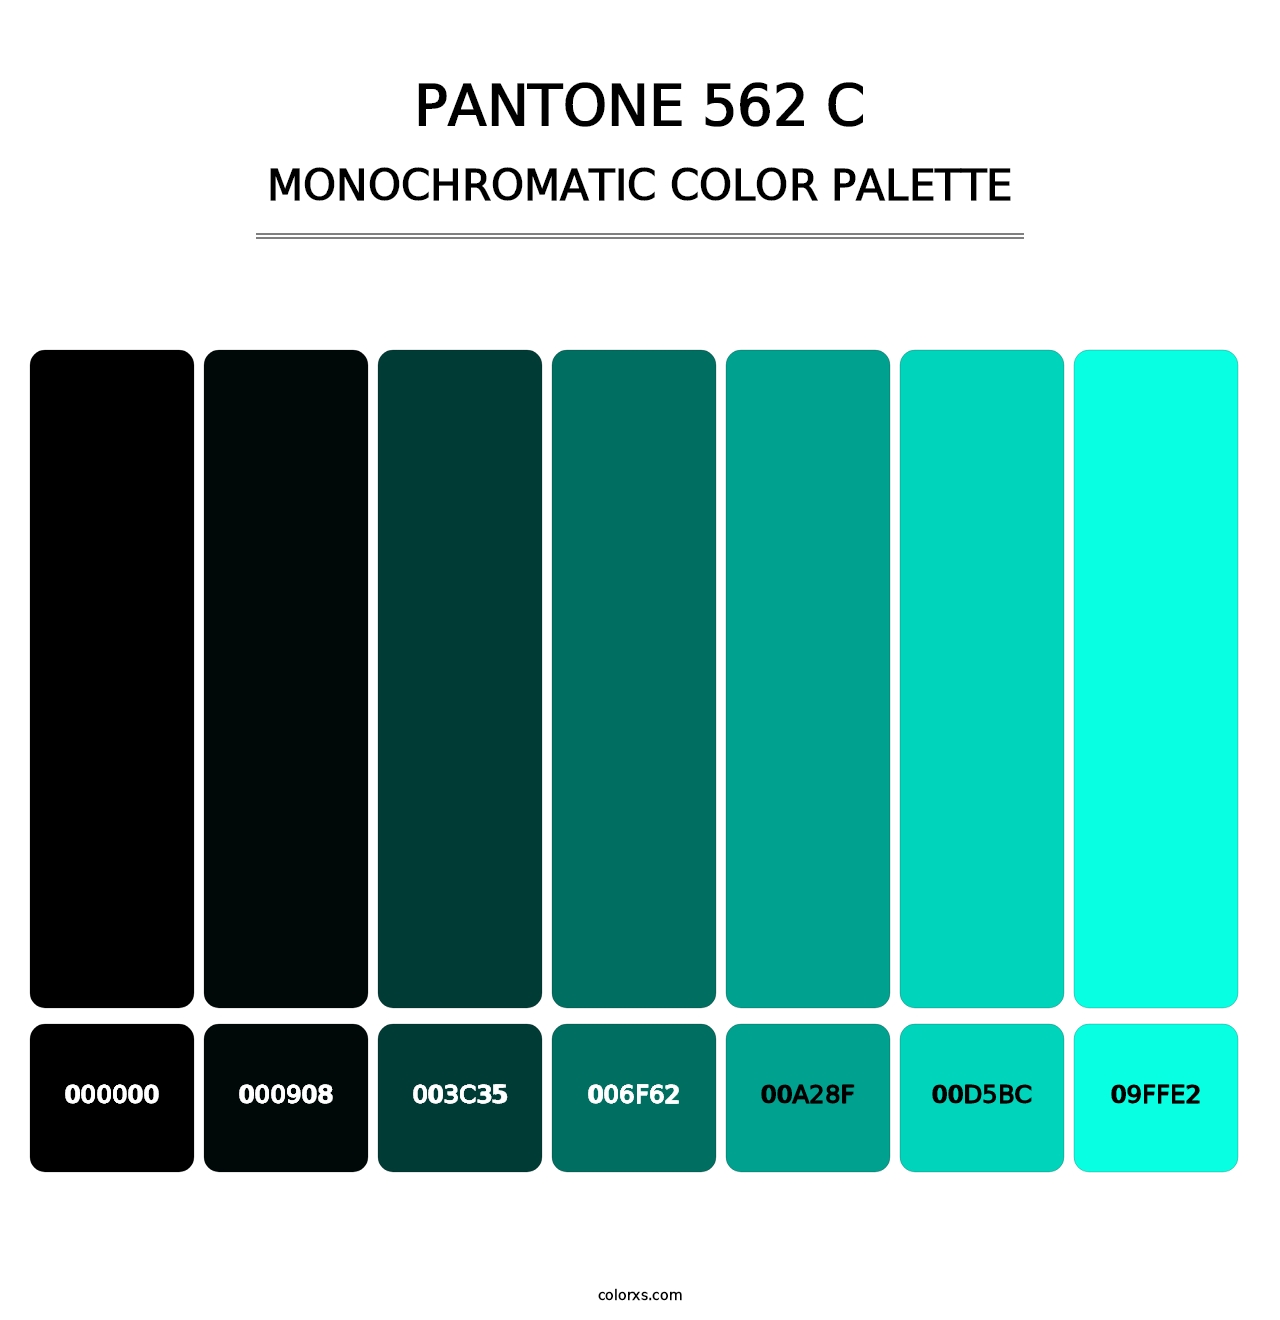 PANTONE 562 C - Monochromatic Color Palette